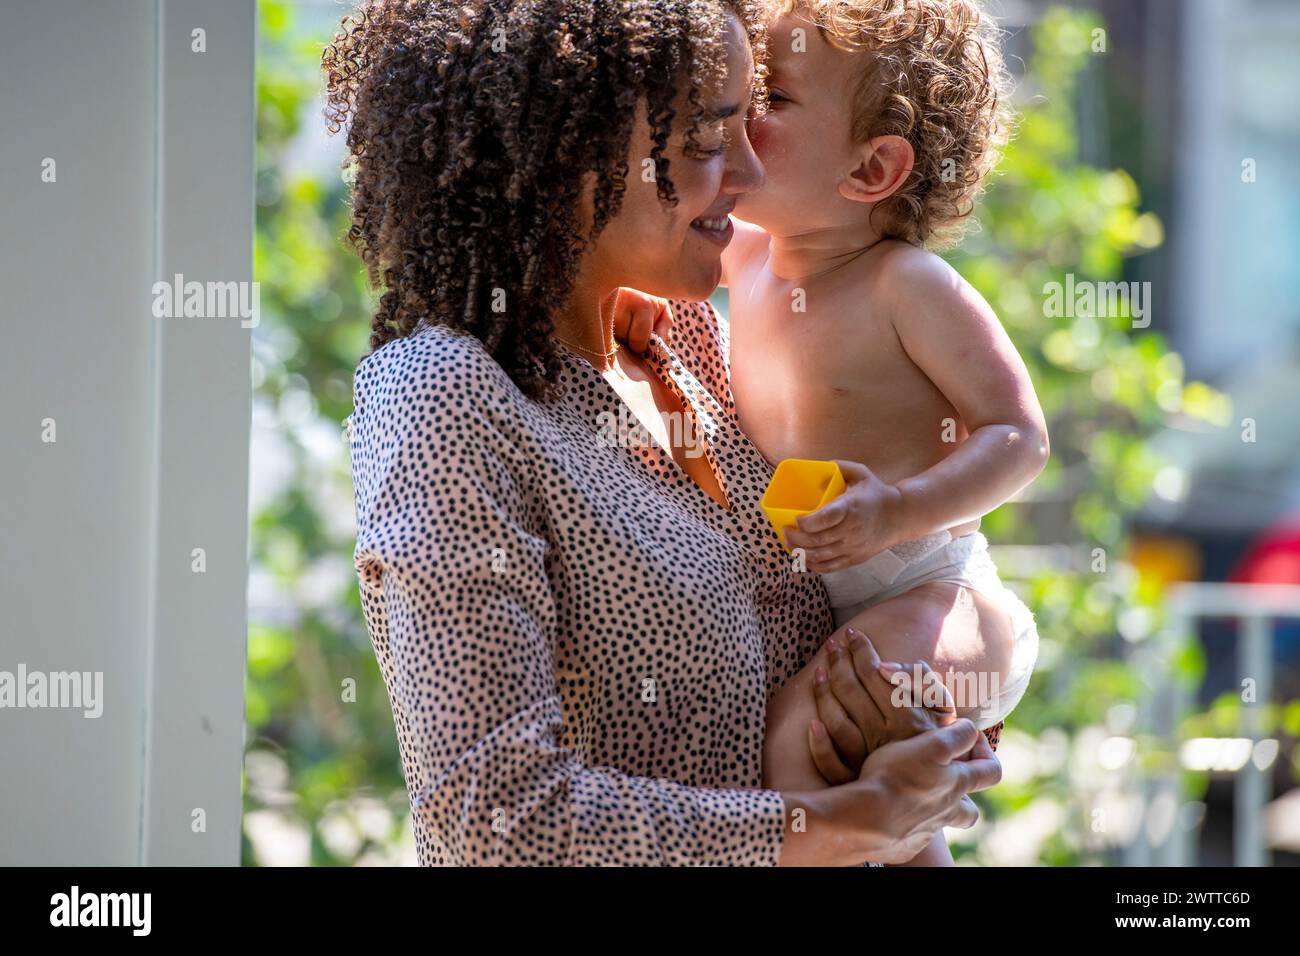 Enfant en bas âge donnant un baiser à une femme souriante par une journée ensoleillée Banque D'Images